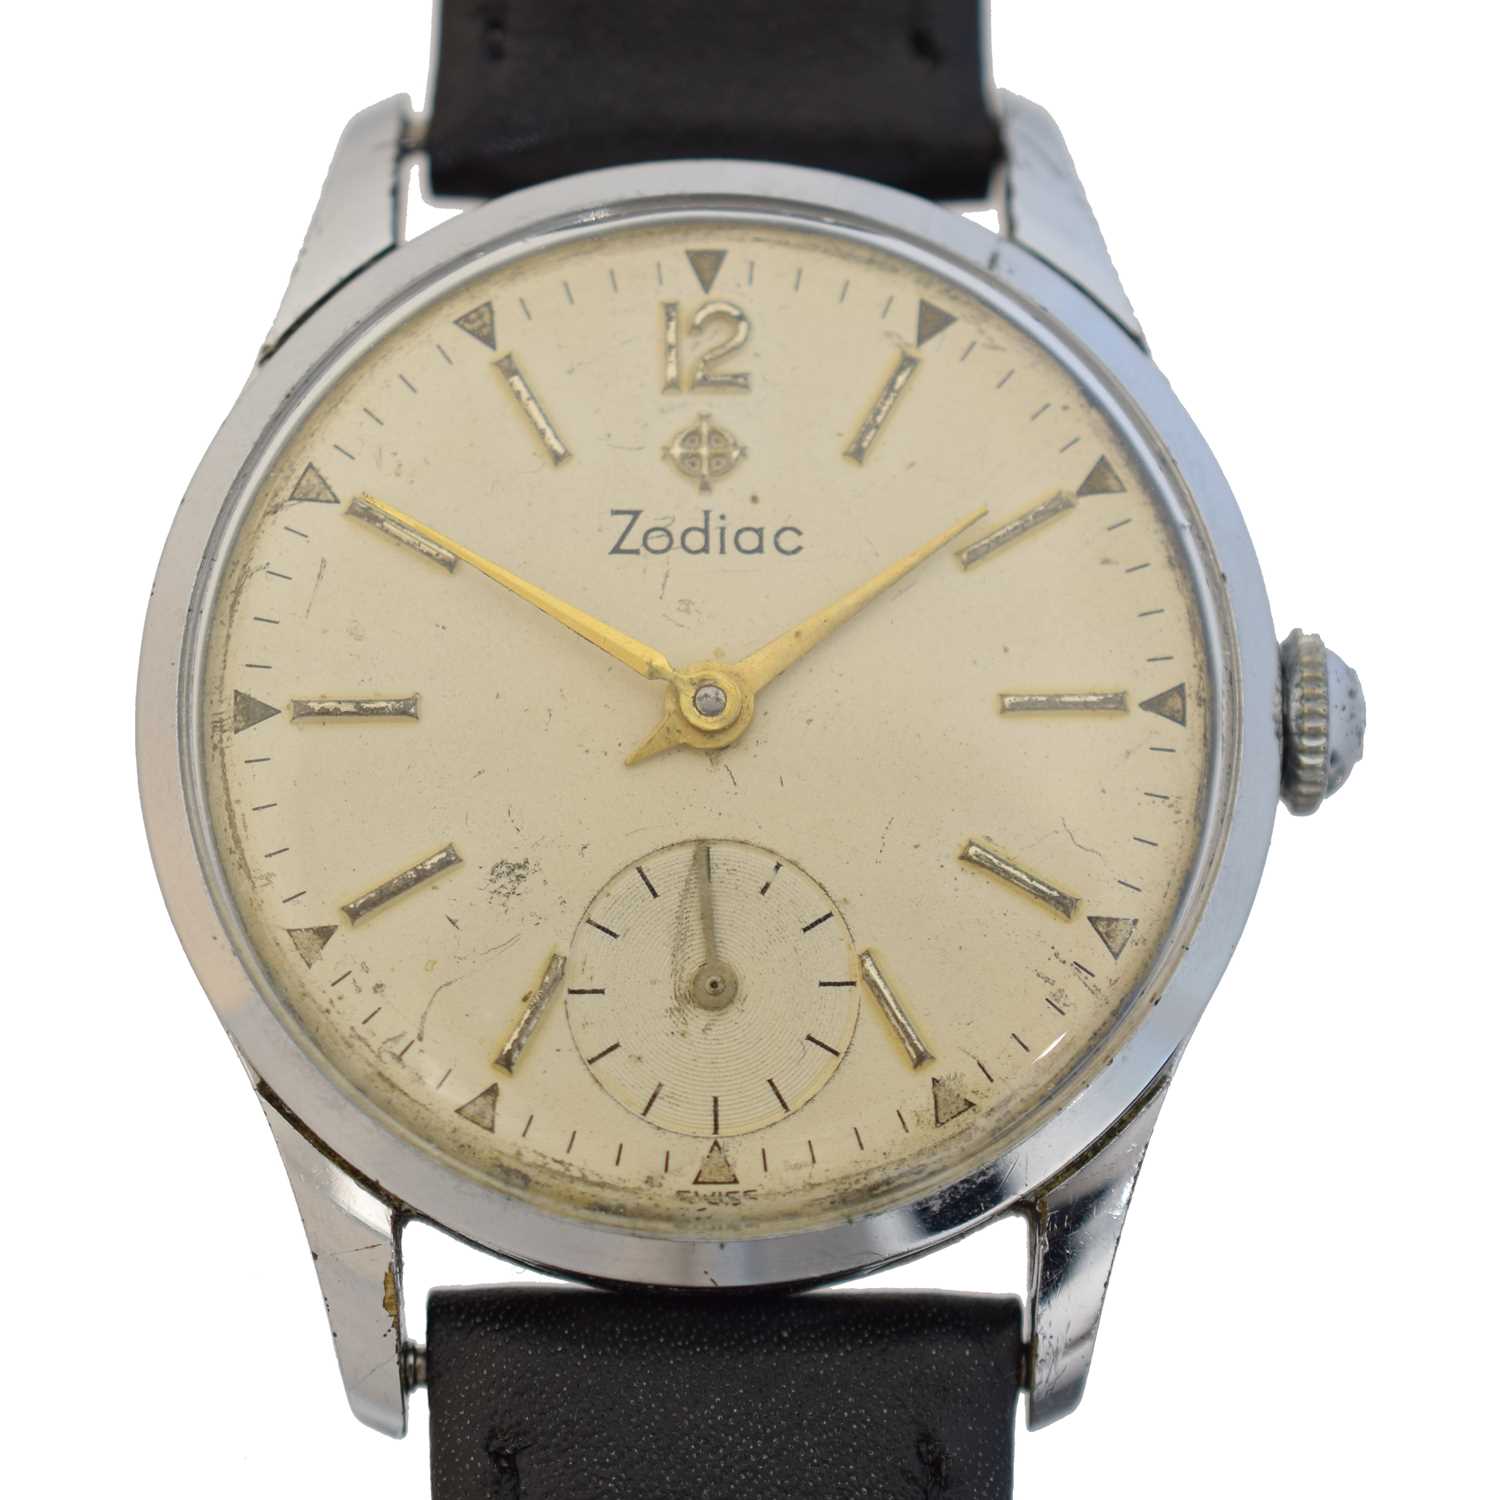 Lot A stainless steel Zodiac wristwatch